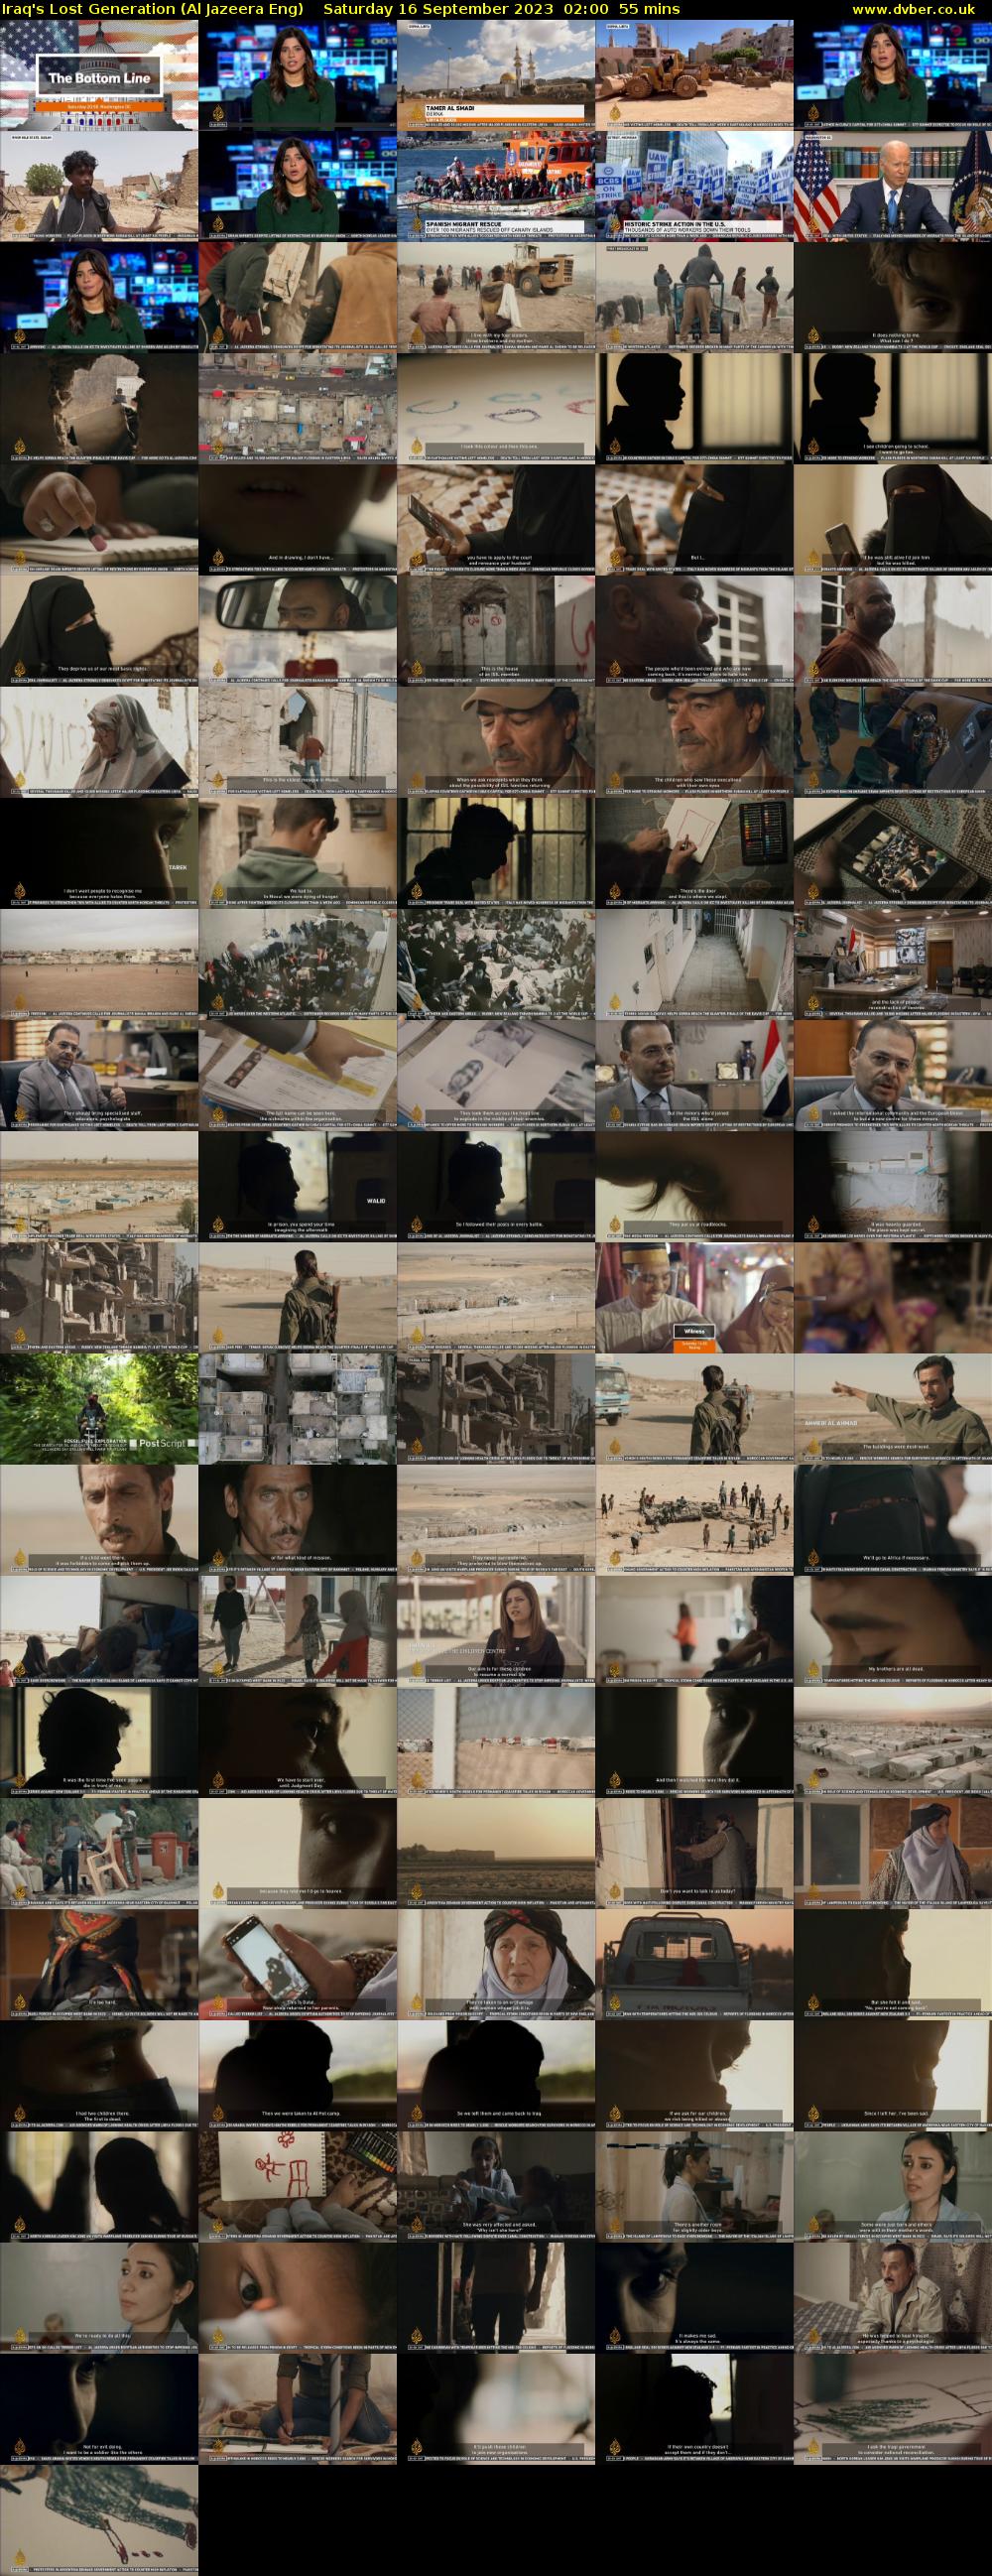 Iraq's Lost Generation (Al Jazeera Eng) Saturday 16 September 2023 02:00 - 02:55